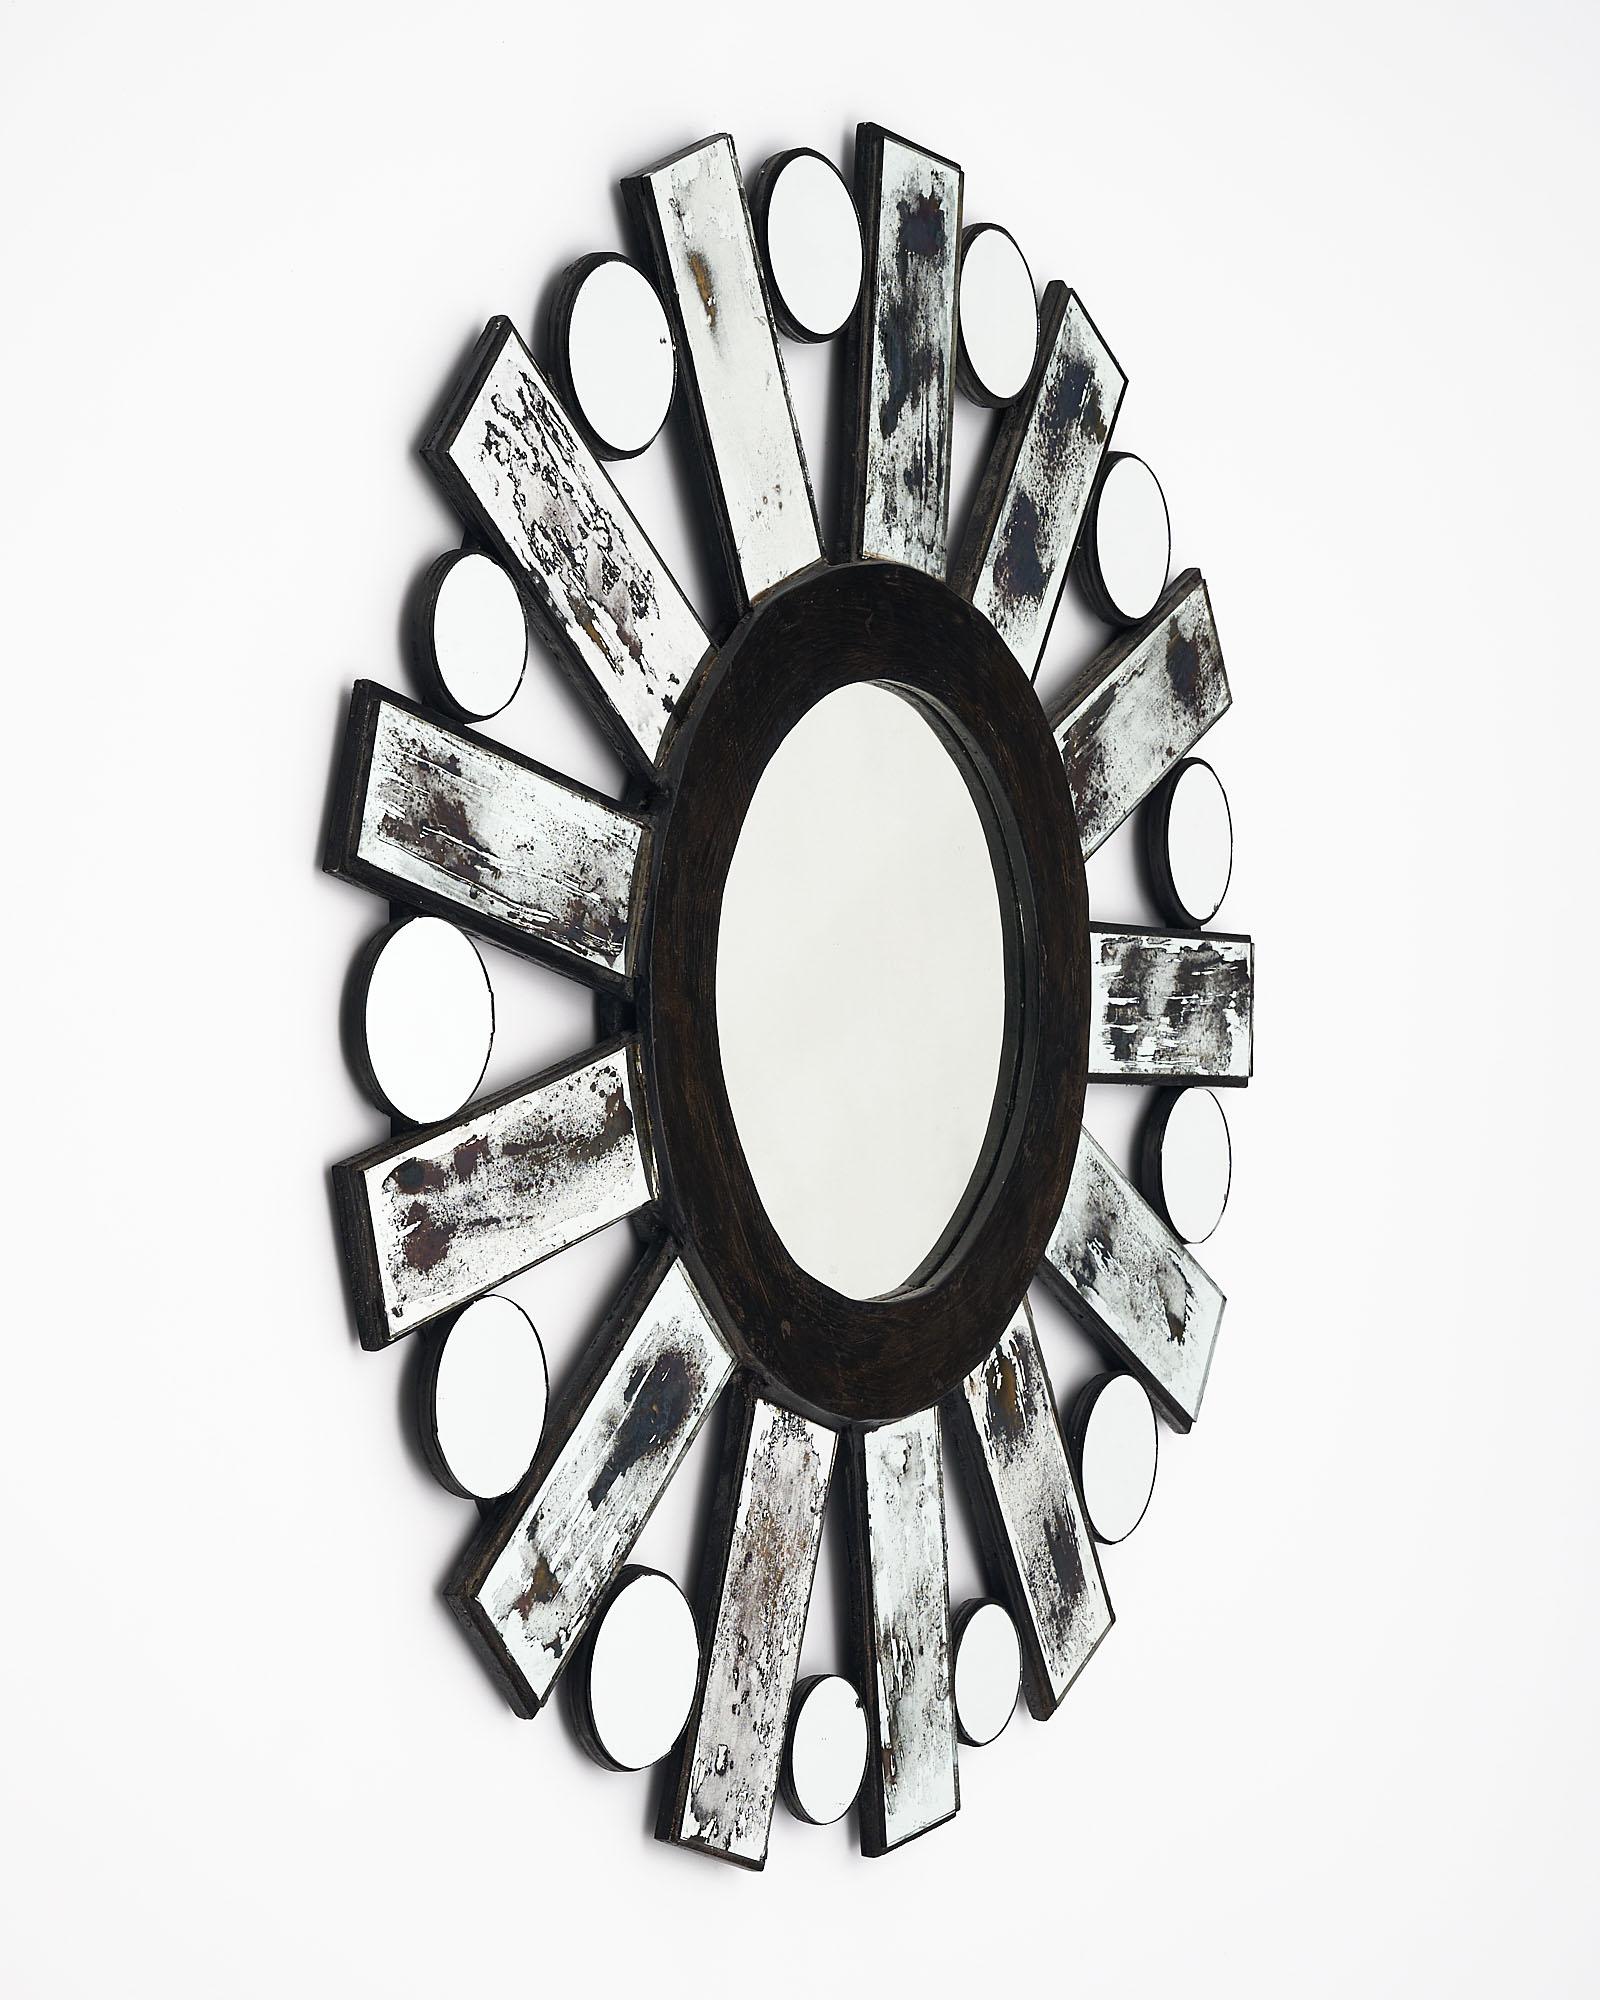 Modernistischer Sunburst-Spiegel mit Holzstruktur und antik verspiegelten Strahlen. Zwischen den einzelnen Strahlen befindet sich ebenfalls ein kugelförmiger Spiegel, der den zentralen kreisförmigen Spiegel überlagert. Wir lieben den stilisierten